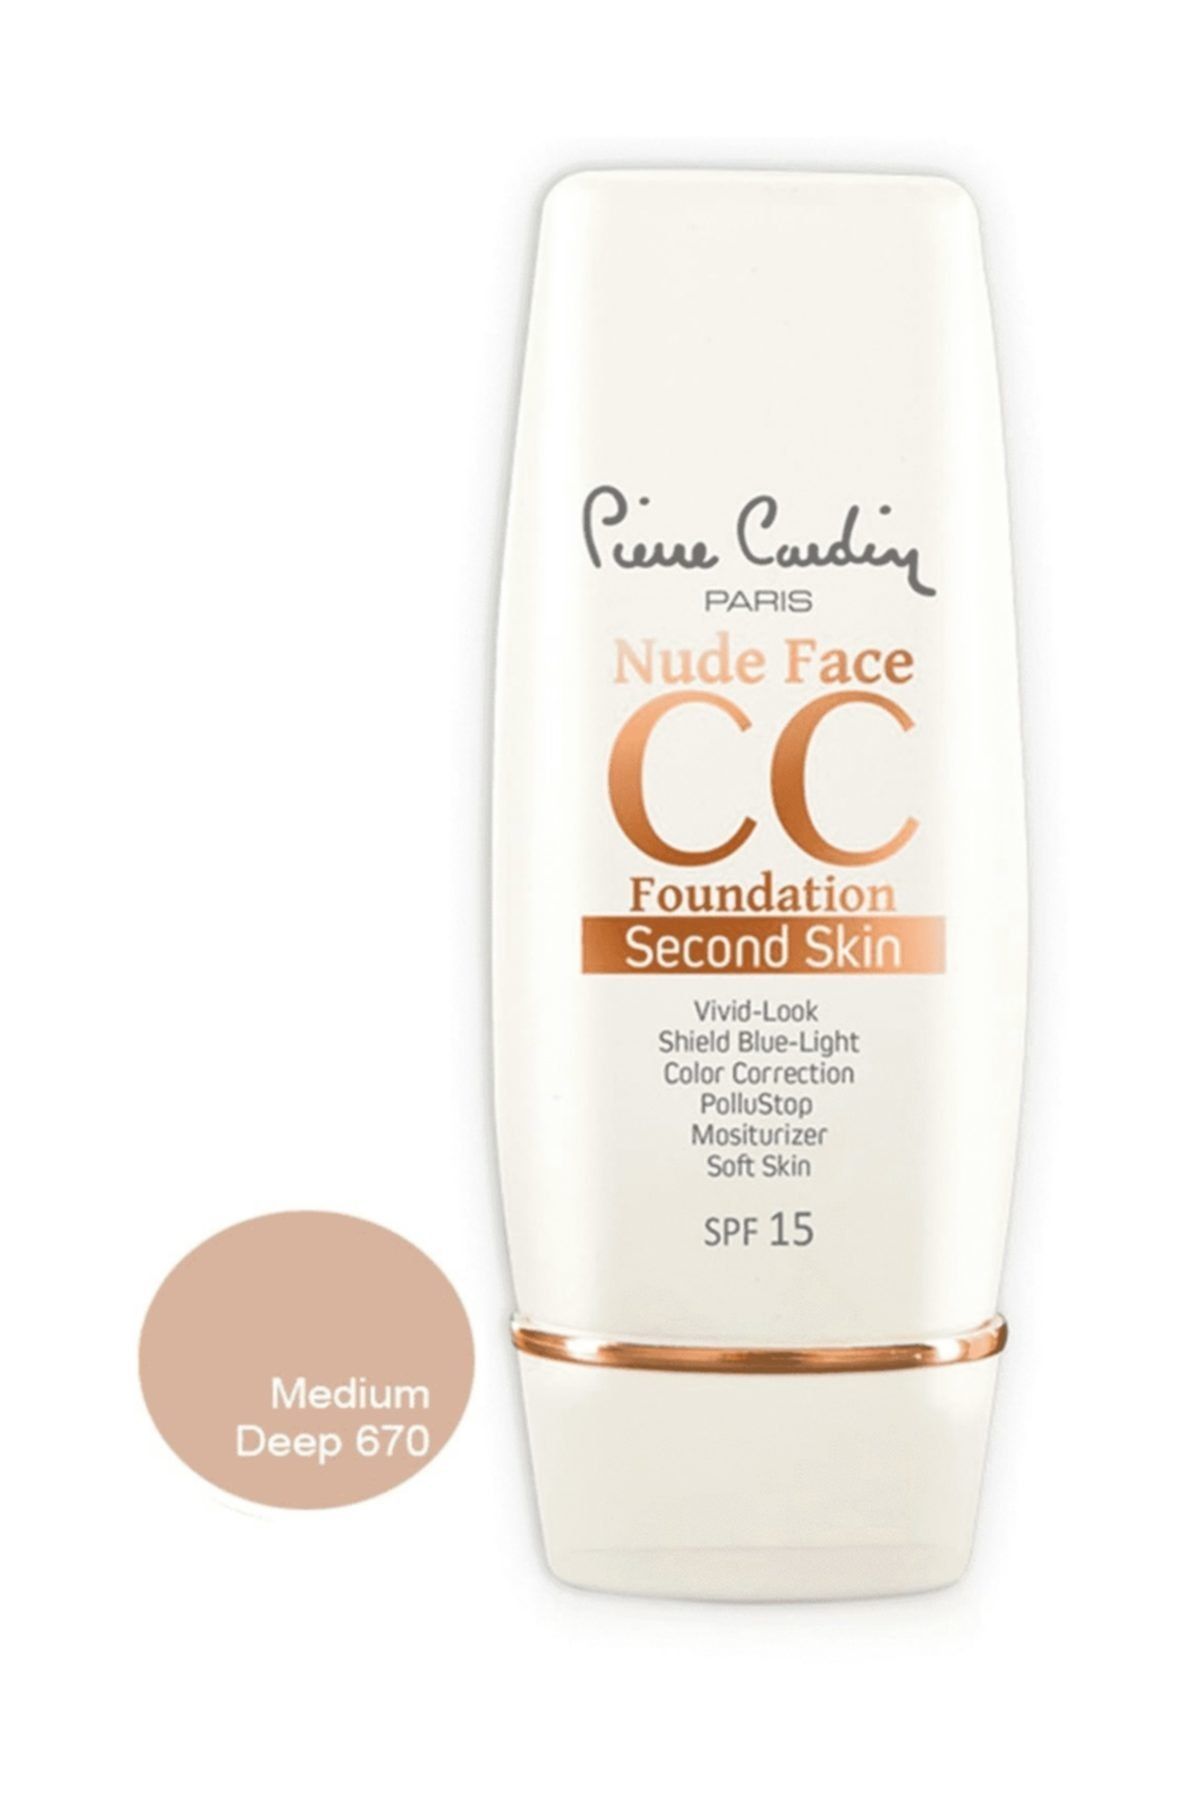 Pierre Cardin Nude Face Cc Cream (spf 15) - Medium Deep